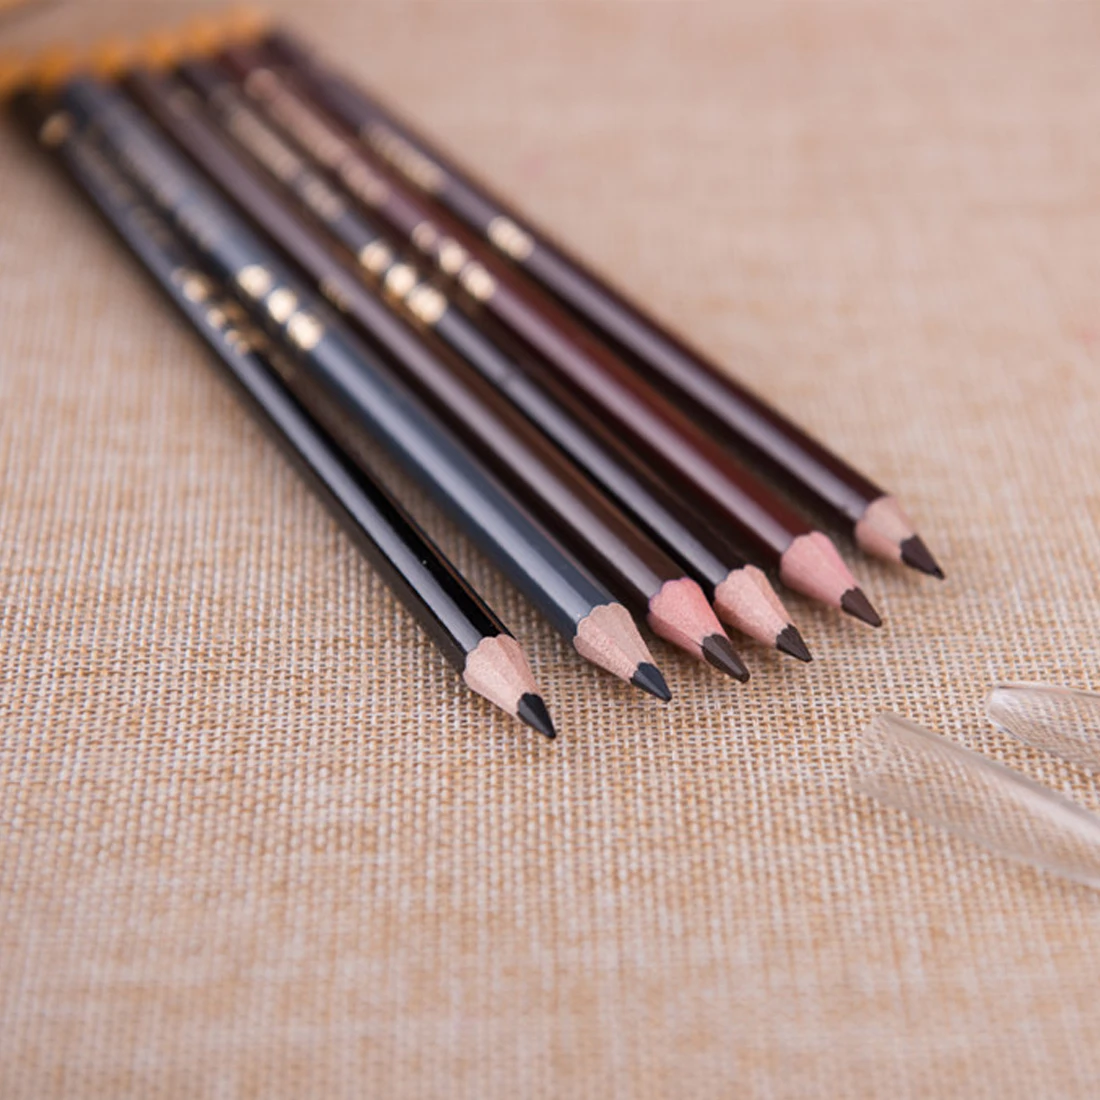 Горячая 1 шт. 5 видов цветов макияж Neatural длительный карандаш для бровей Enhancer Водонепроницаемый бровей Pen Красота Косметика Инструменты